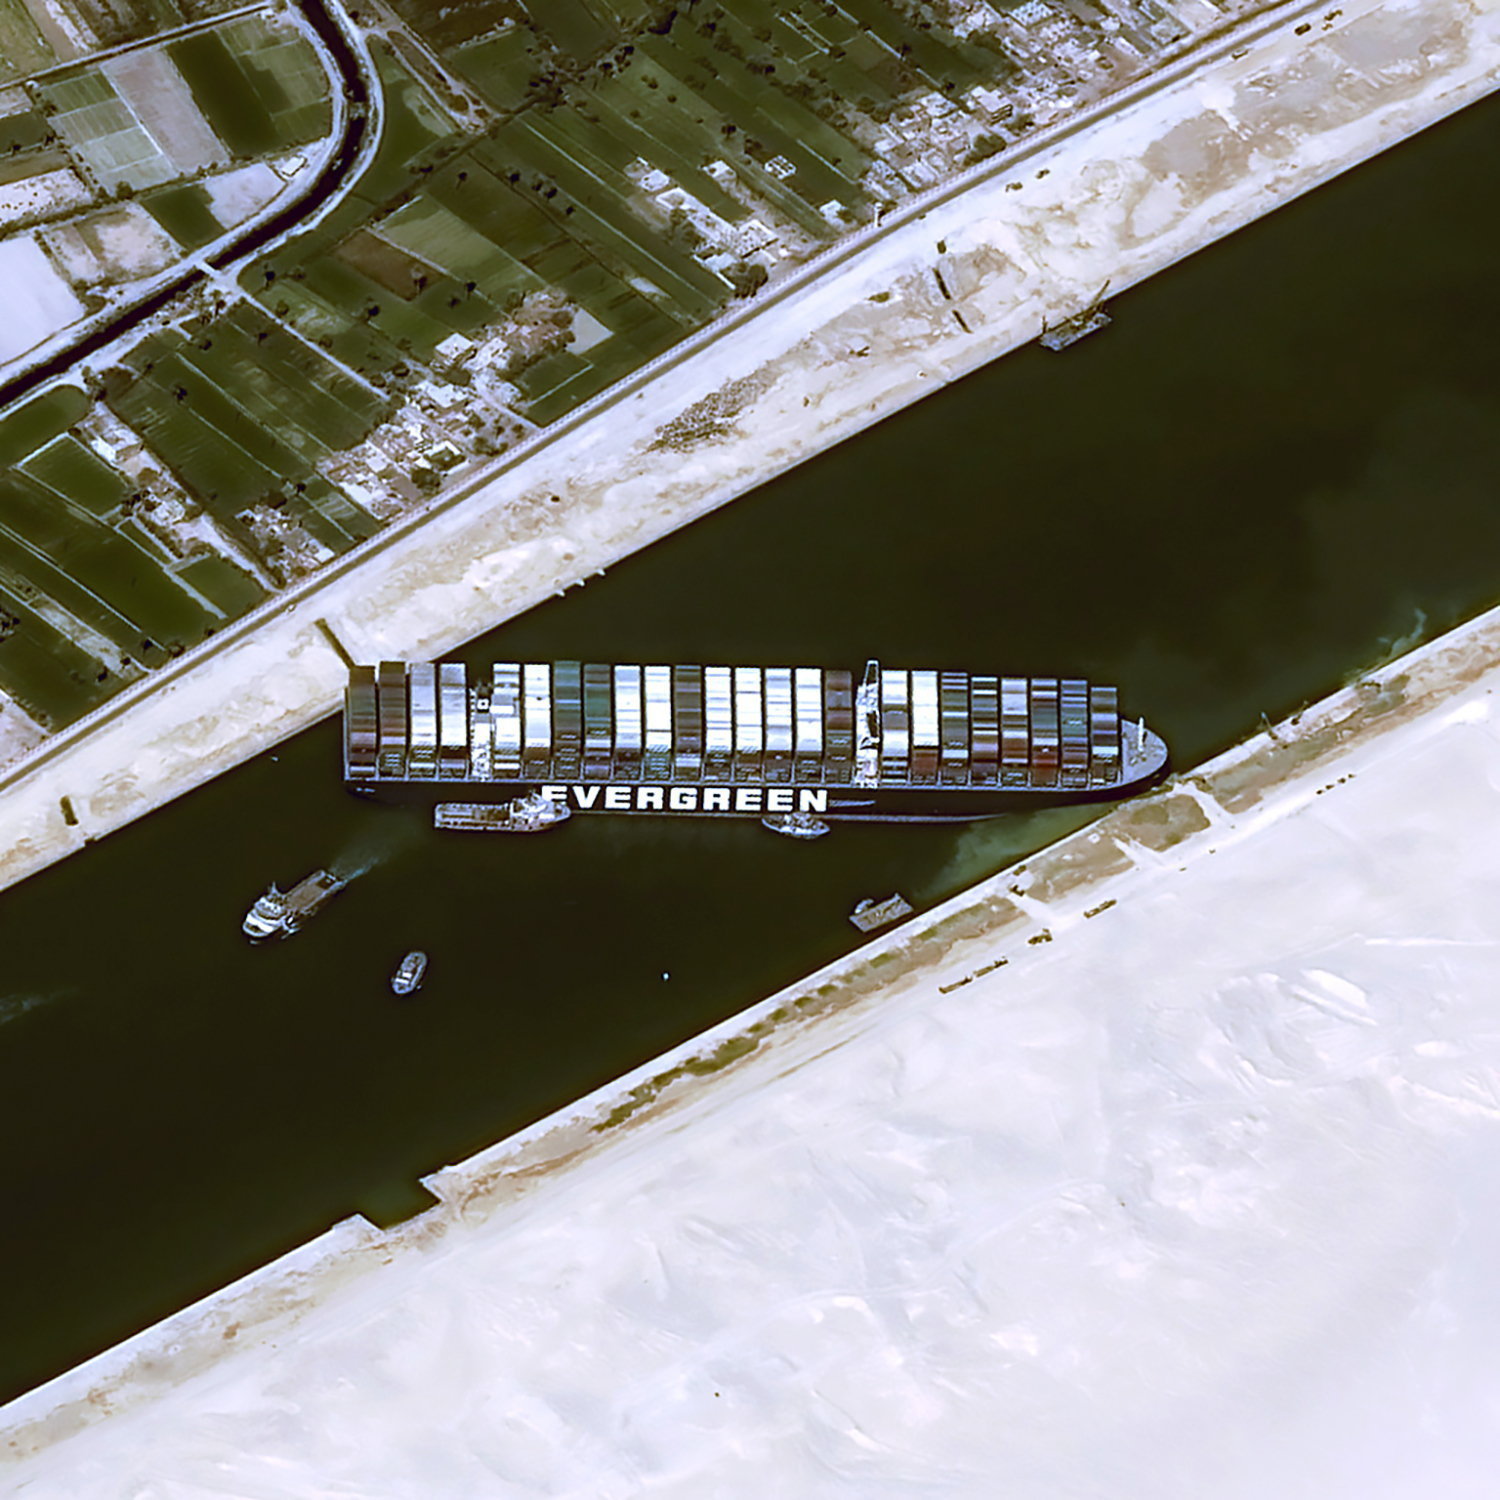 Megmozdították a Szuezi-csatornát elzáró teherhajót, de nem tudni, mikorra szabadítható ki